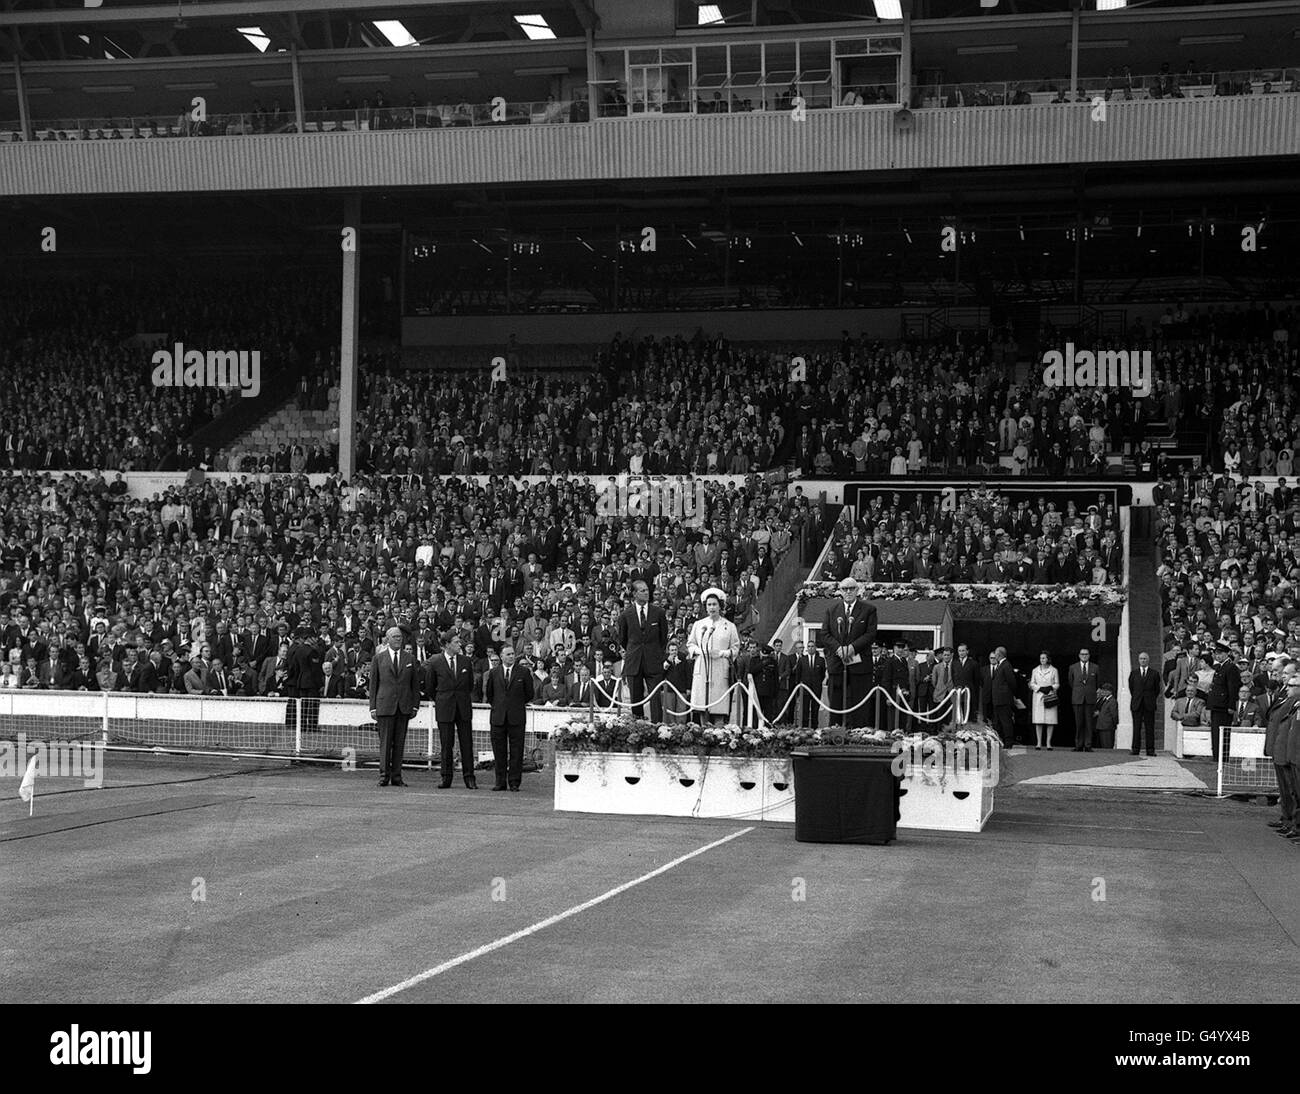 Calcio - Coppa del mondo FIFA Inghilterra 1966 - Partita di apertura - Gruppo uno - Inghilterra / Uruguay - Stadio di Wembley. La Regina viene presentata al campo al Wembley Stadium di Londra oggi dopo aver dichiarato l'apertura della Coppa del mondo. Foto Stock